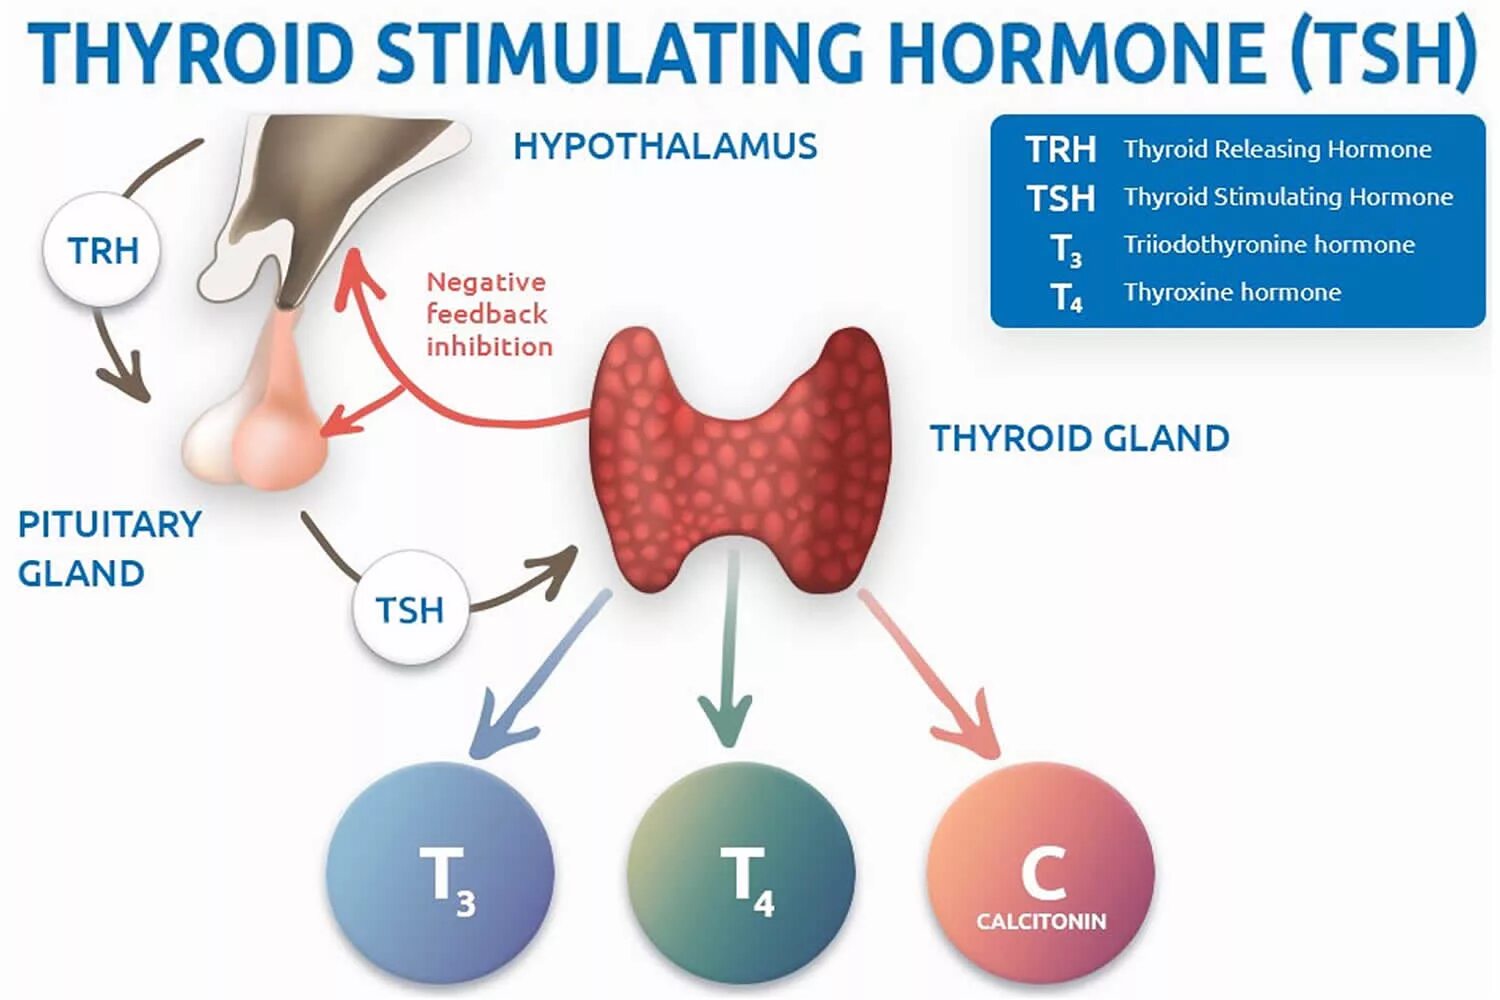 ТТГ гормон 4.60. Гормоны щитовидной железы ТТГ И т4. ТТГ влияет на функцию щитовидной железы по принципу. Тиреотропный гормон вырабатывается гормонов. После т3